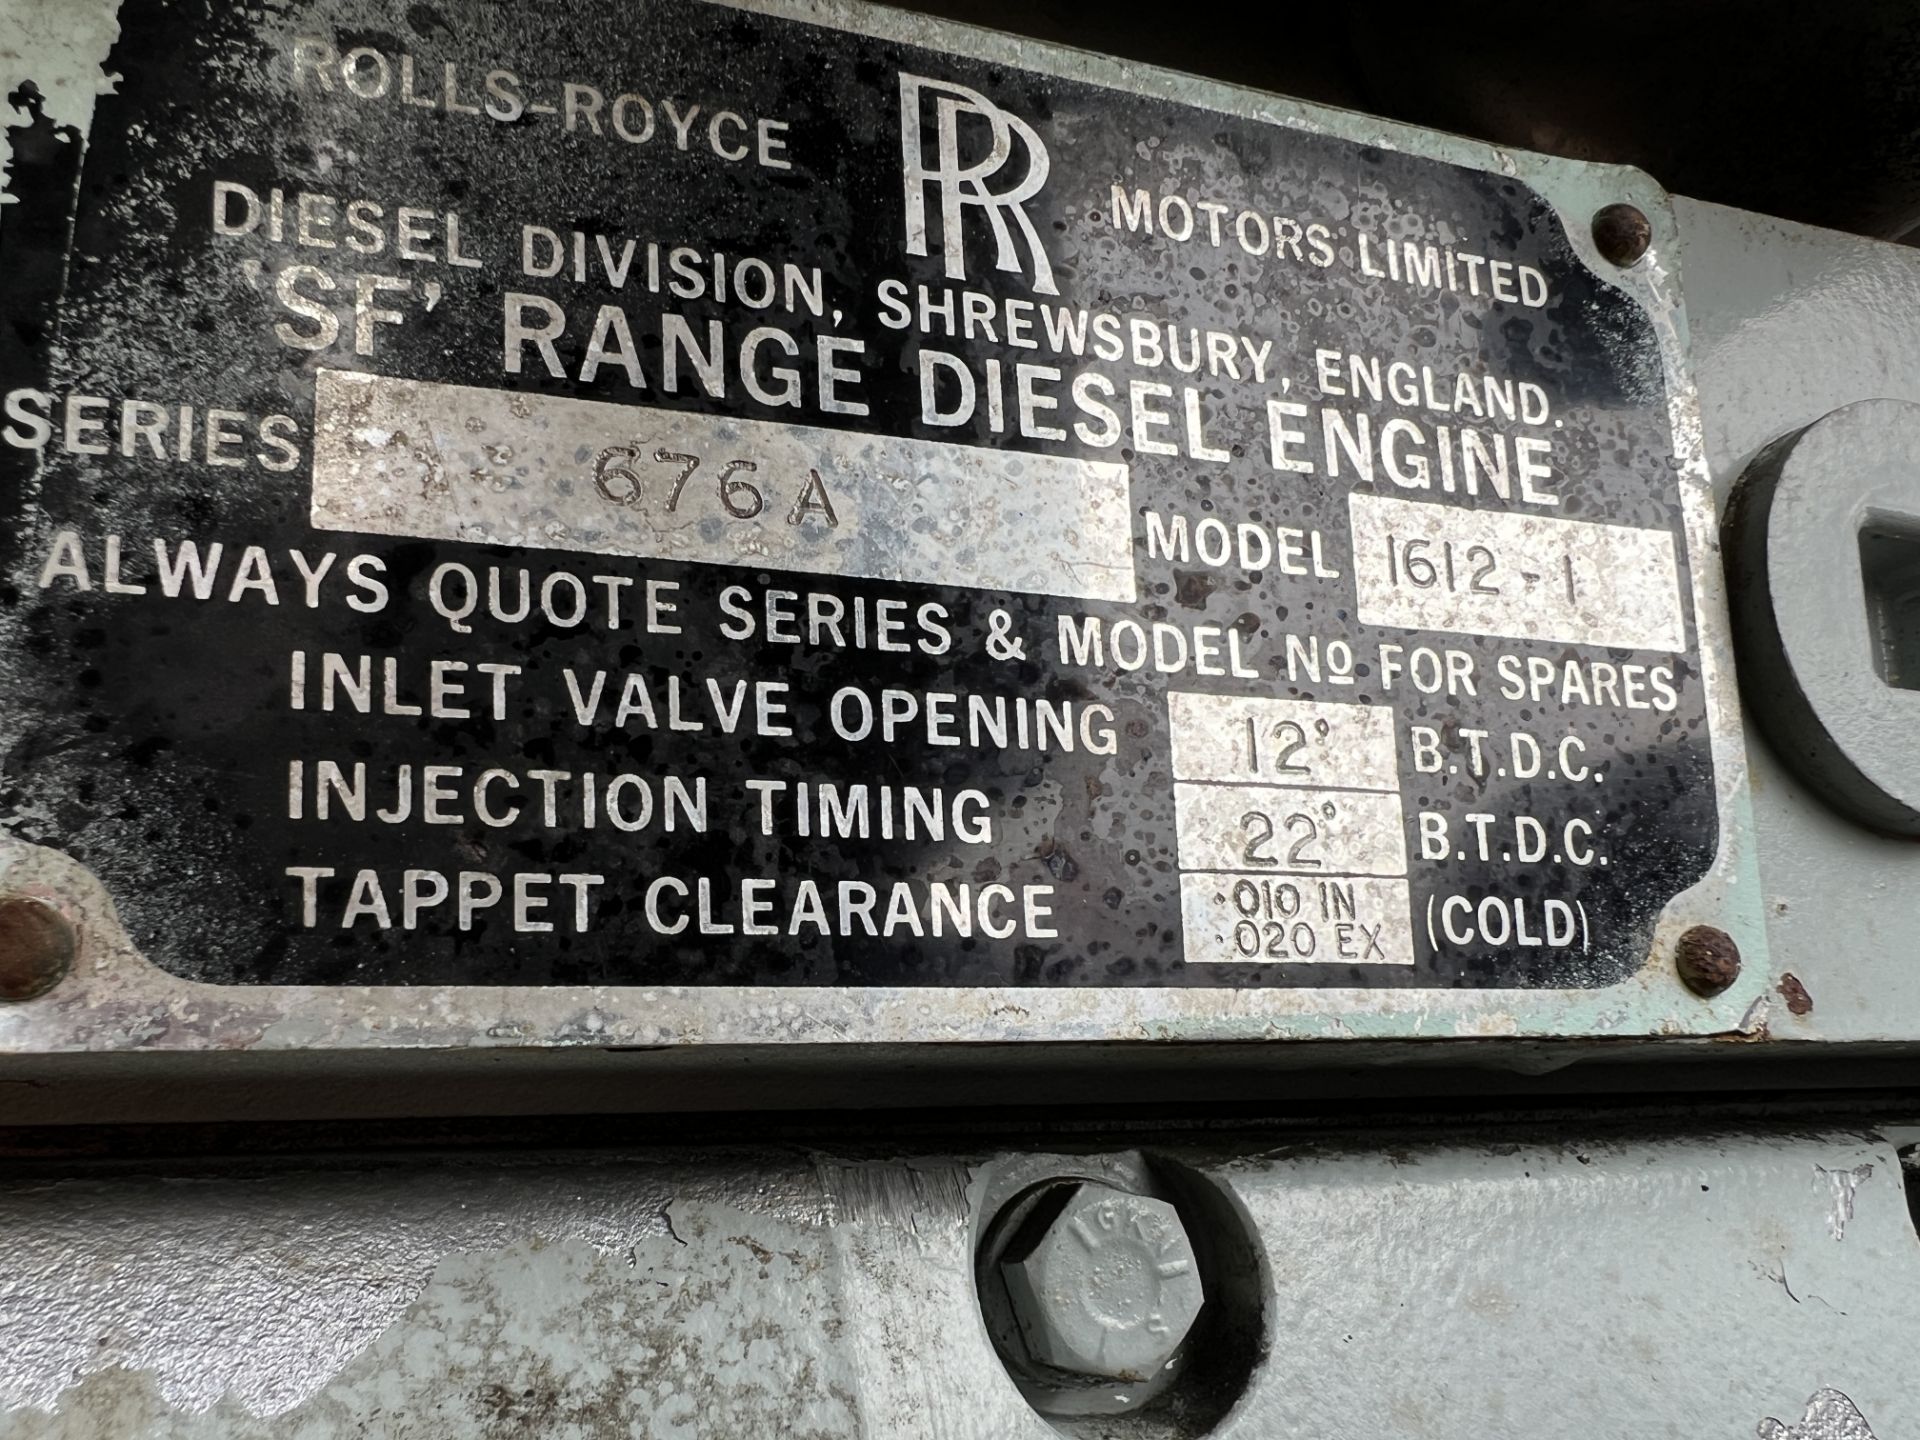 Rolls Royce SF6 Diesel Power pack 778Hours - Image 4 of 4